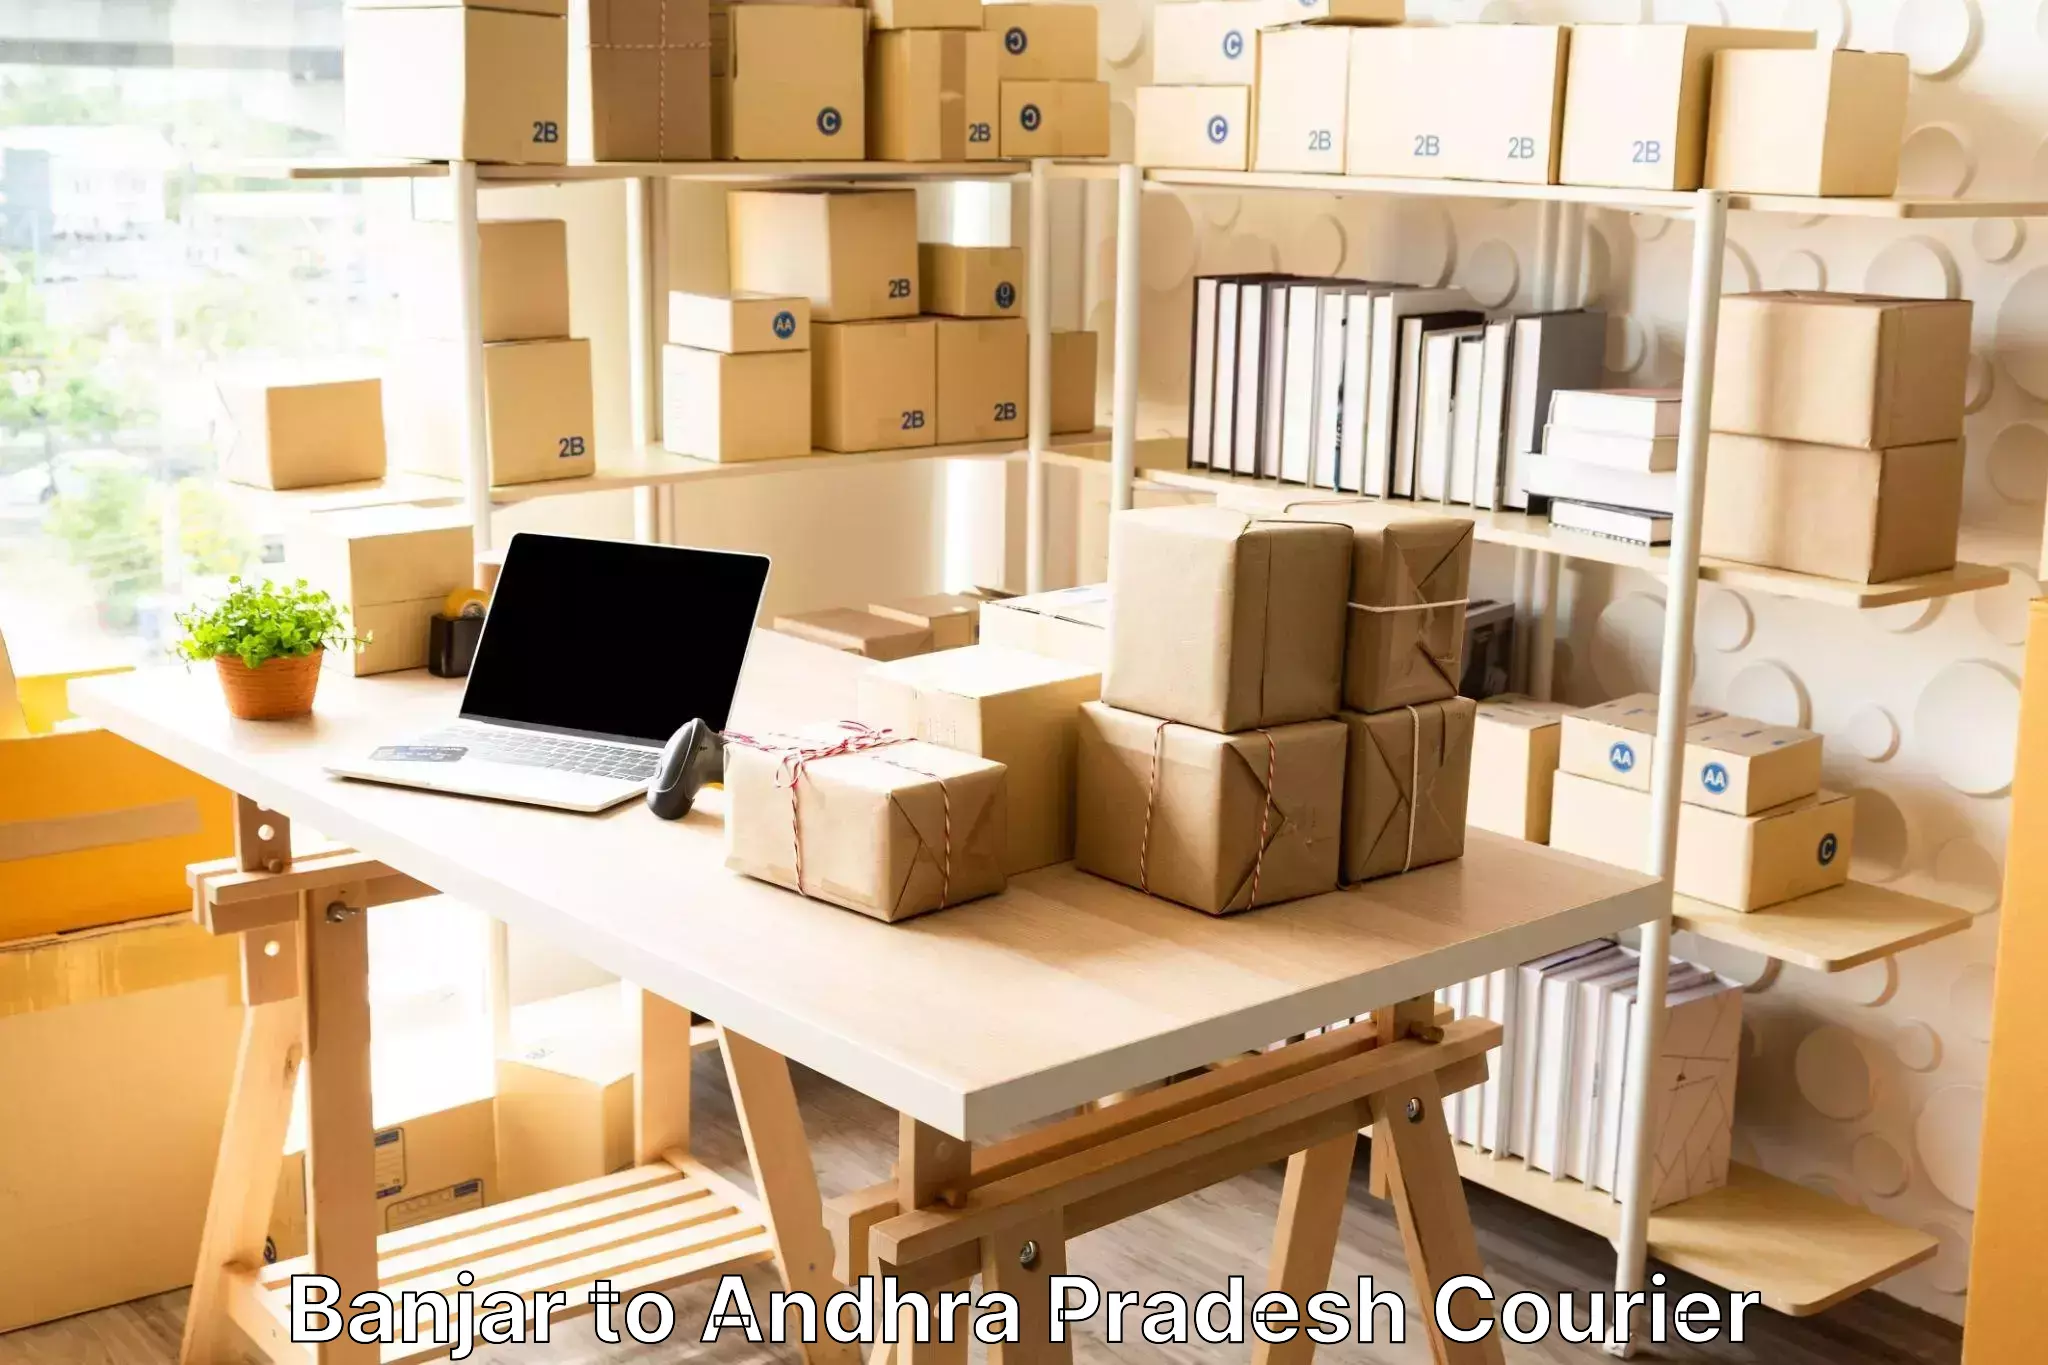 Hassle-free luggage shipping Banjar to Andhra Pradesh